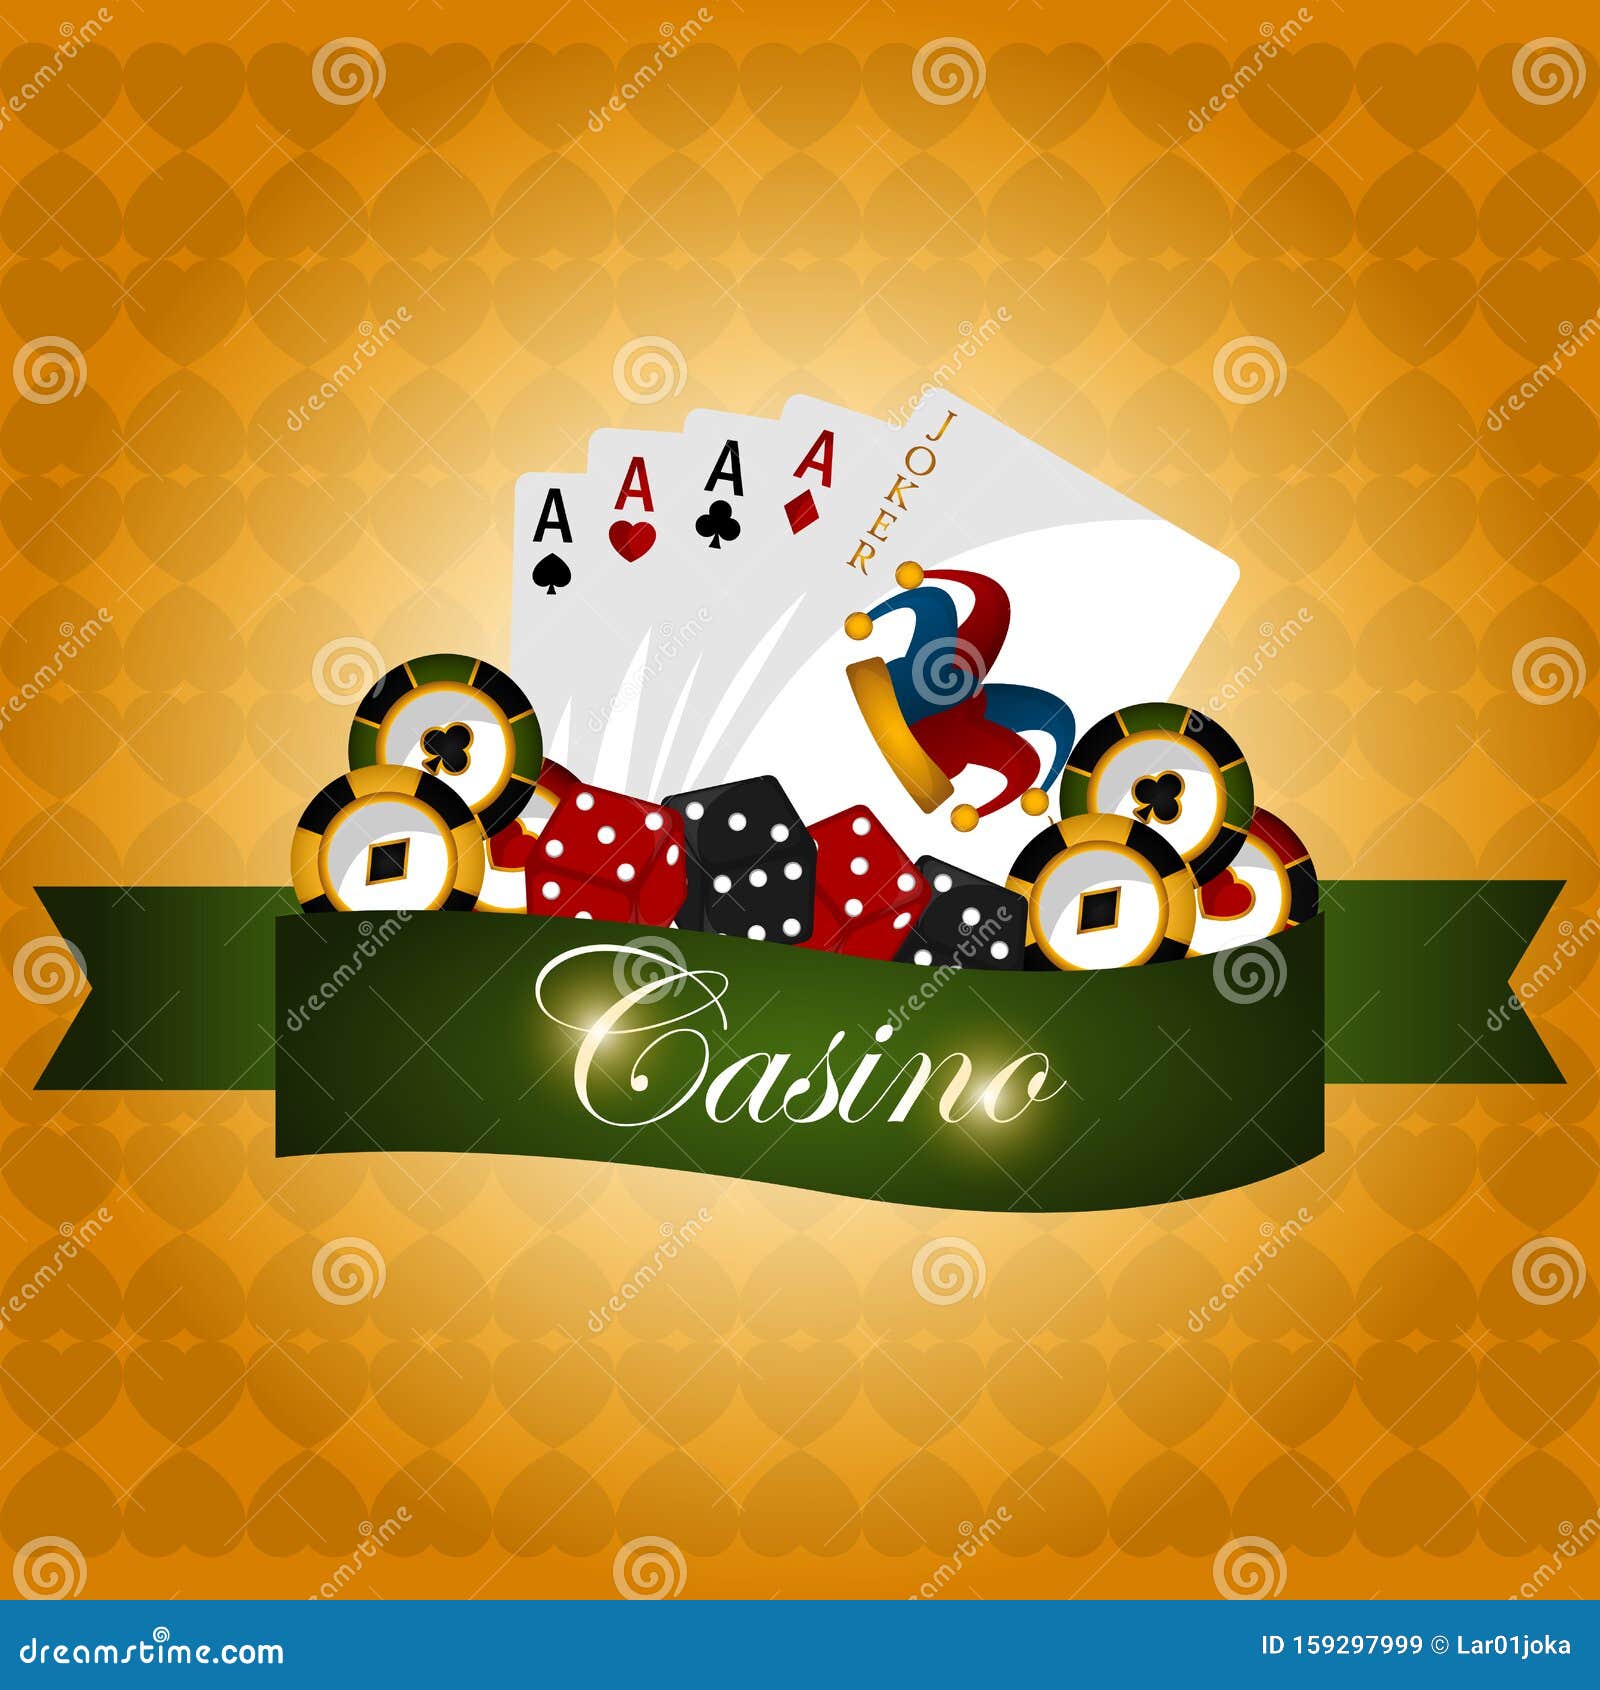 Casino poster illustration stock vector. Illustration of casino - 159297999